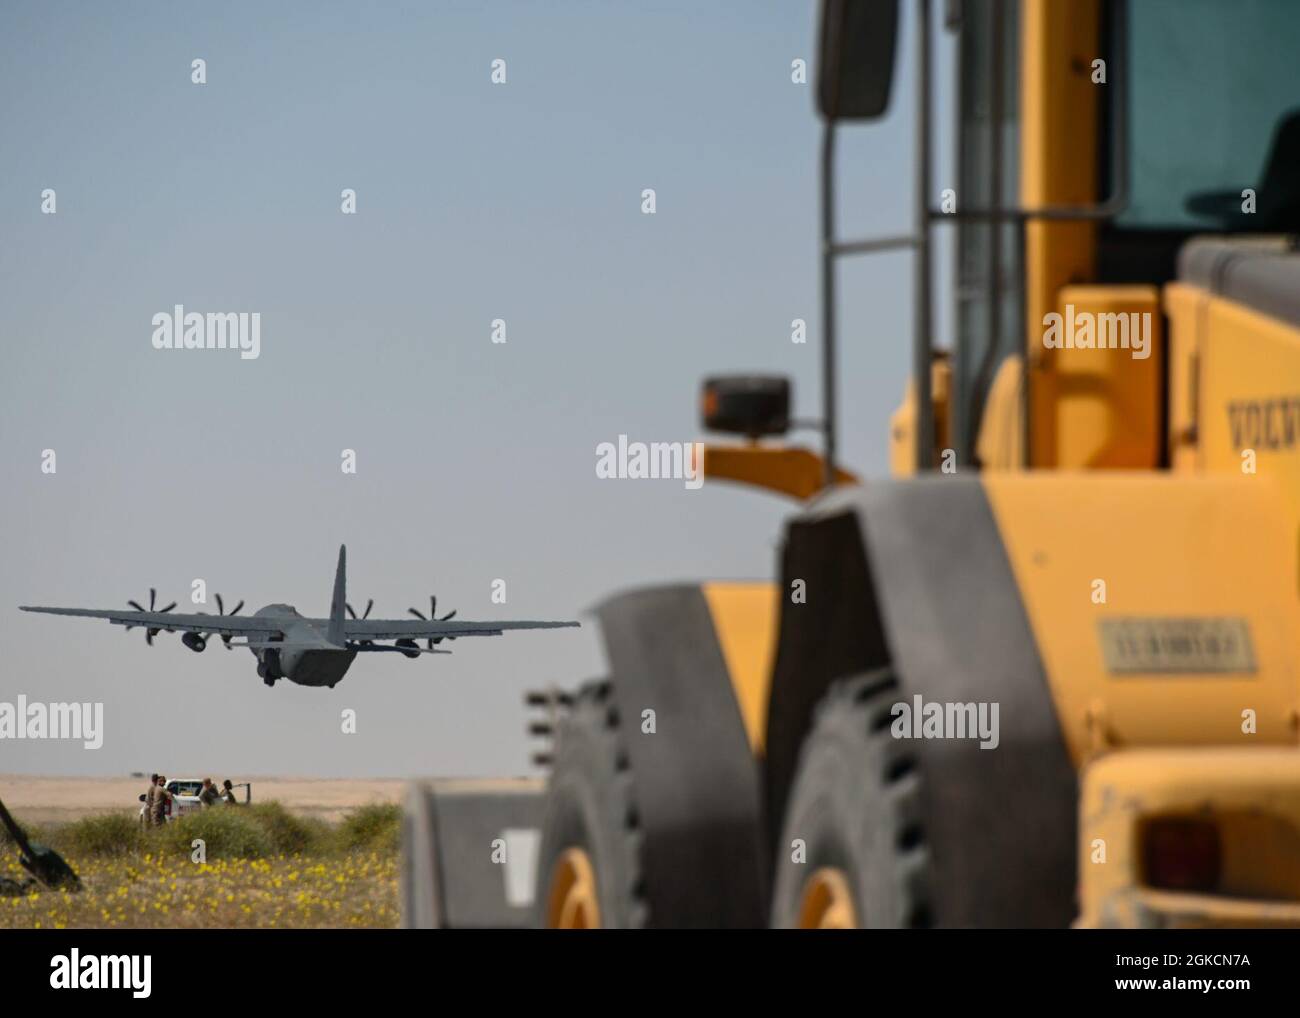 Un HC-130 Hercules prend son envol de la base aérienne Ali Al Salem, au Koweït, le 14 mars 2021. Les HC-130s déployés dans la SAAB appuient la mission de la 386e Escadre expéditionnaire aérienne consistant à maintenir la porte d’entrée dans leur zone de responsabilité en transférant des marchandises et des personnes à un moment donné. Banque D'Images